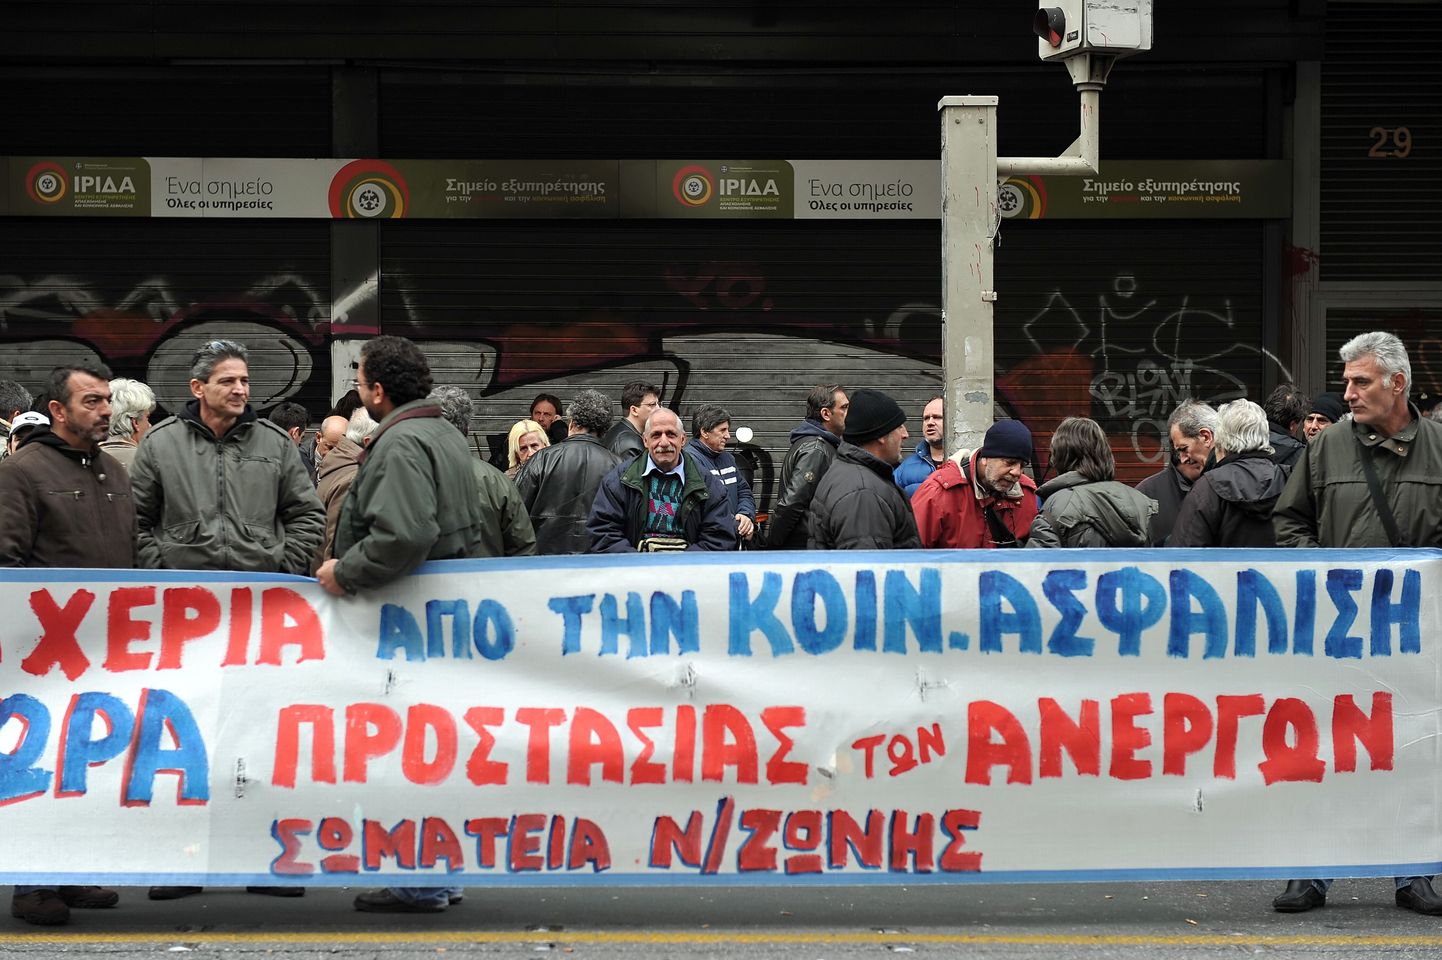 Protestijad eelmise aasta lõpus Ateenas tööjõuministeeriumi juures.